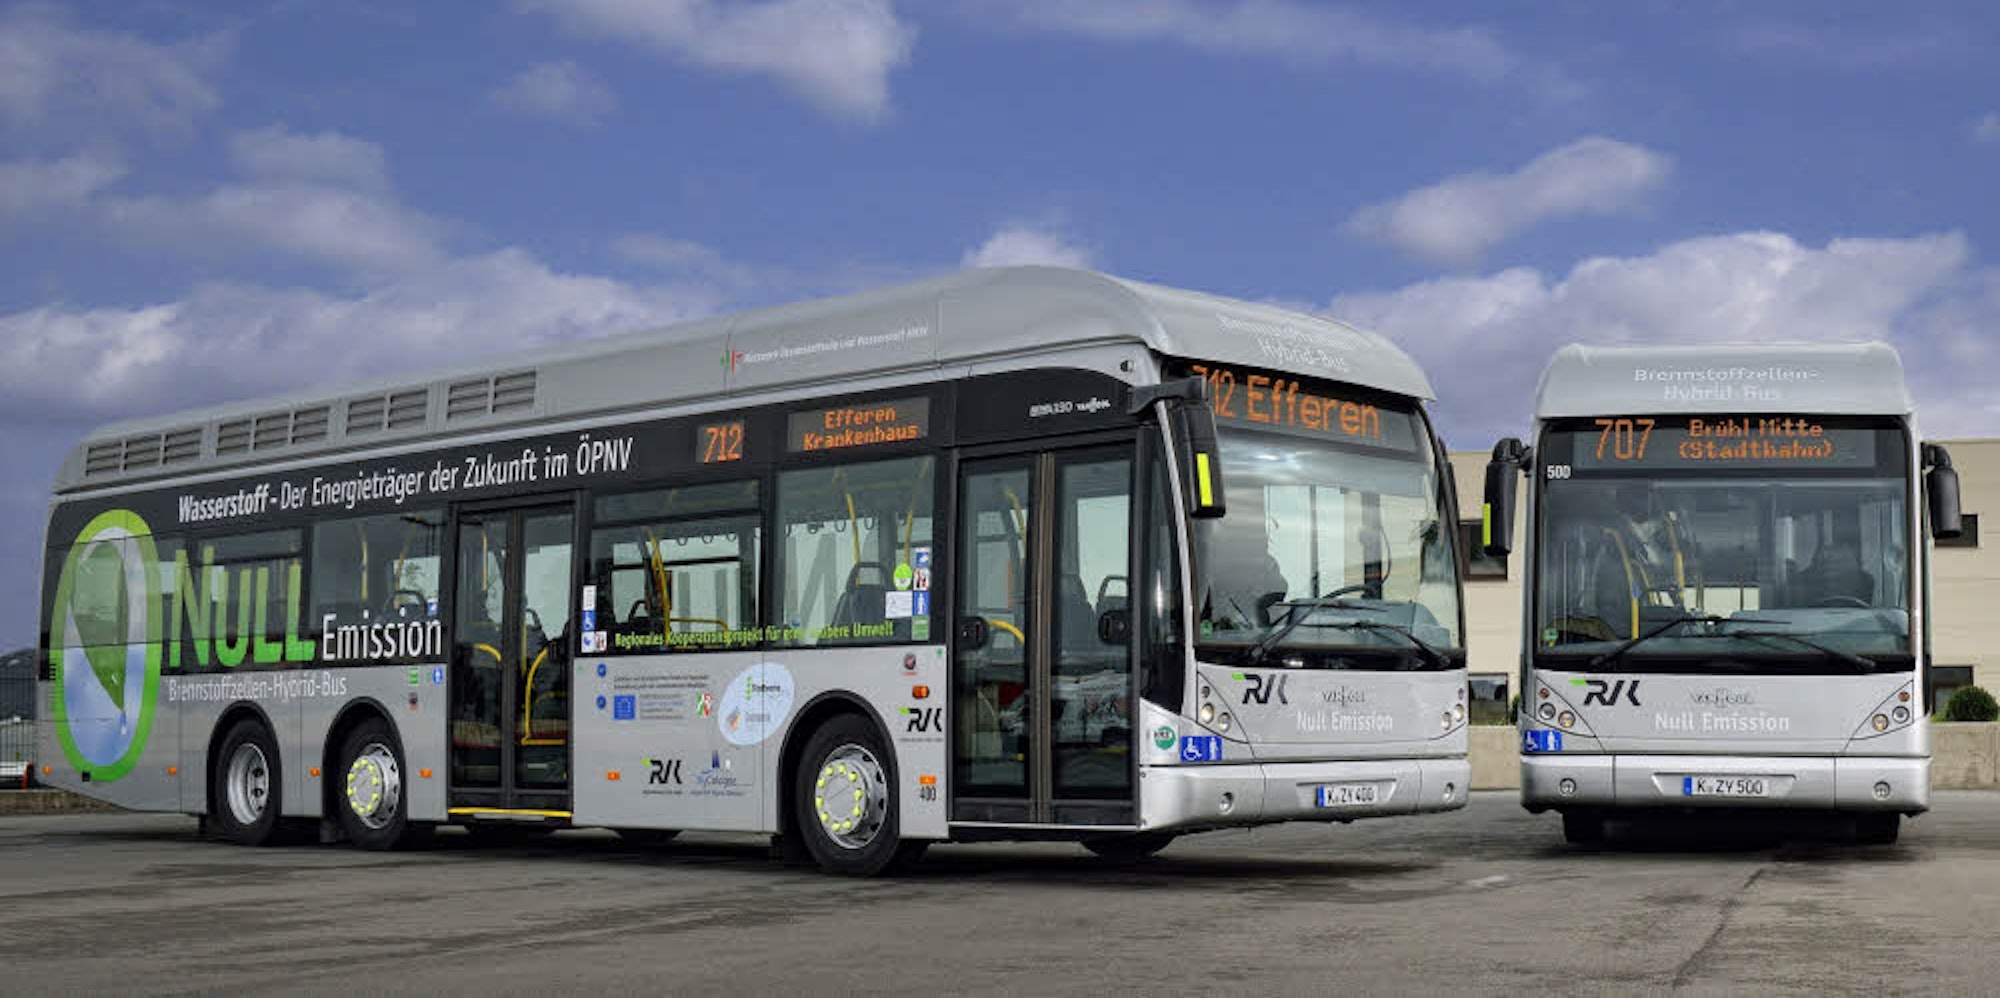 Seit 2011 fahren im ÖPNV der Städte Hürth und Brühl Brennstoffzellen-Hybridbusse in Kooperation mit der RVK.